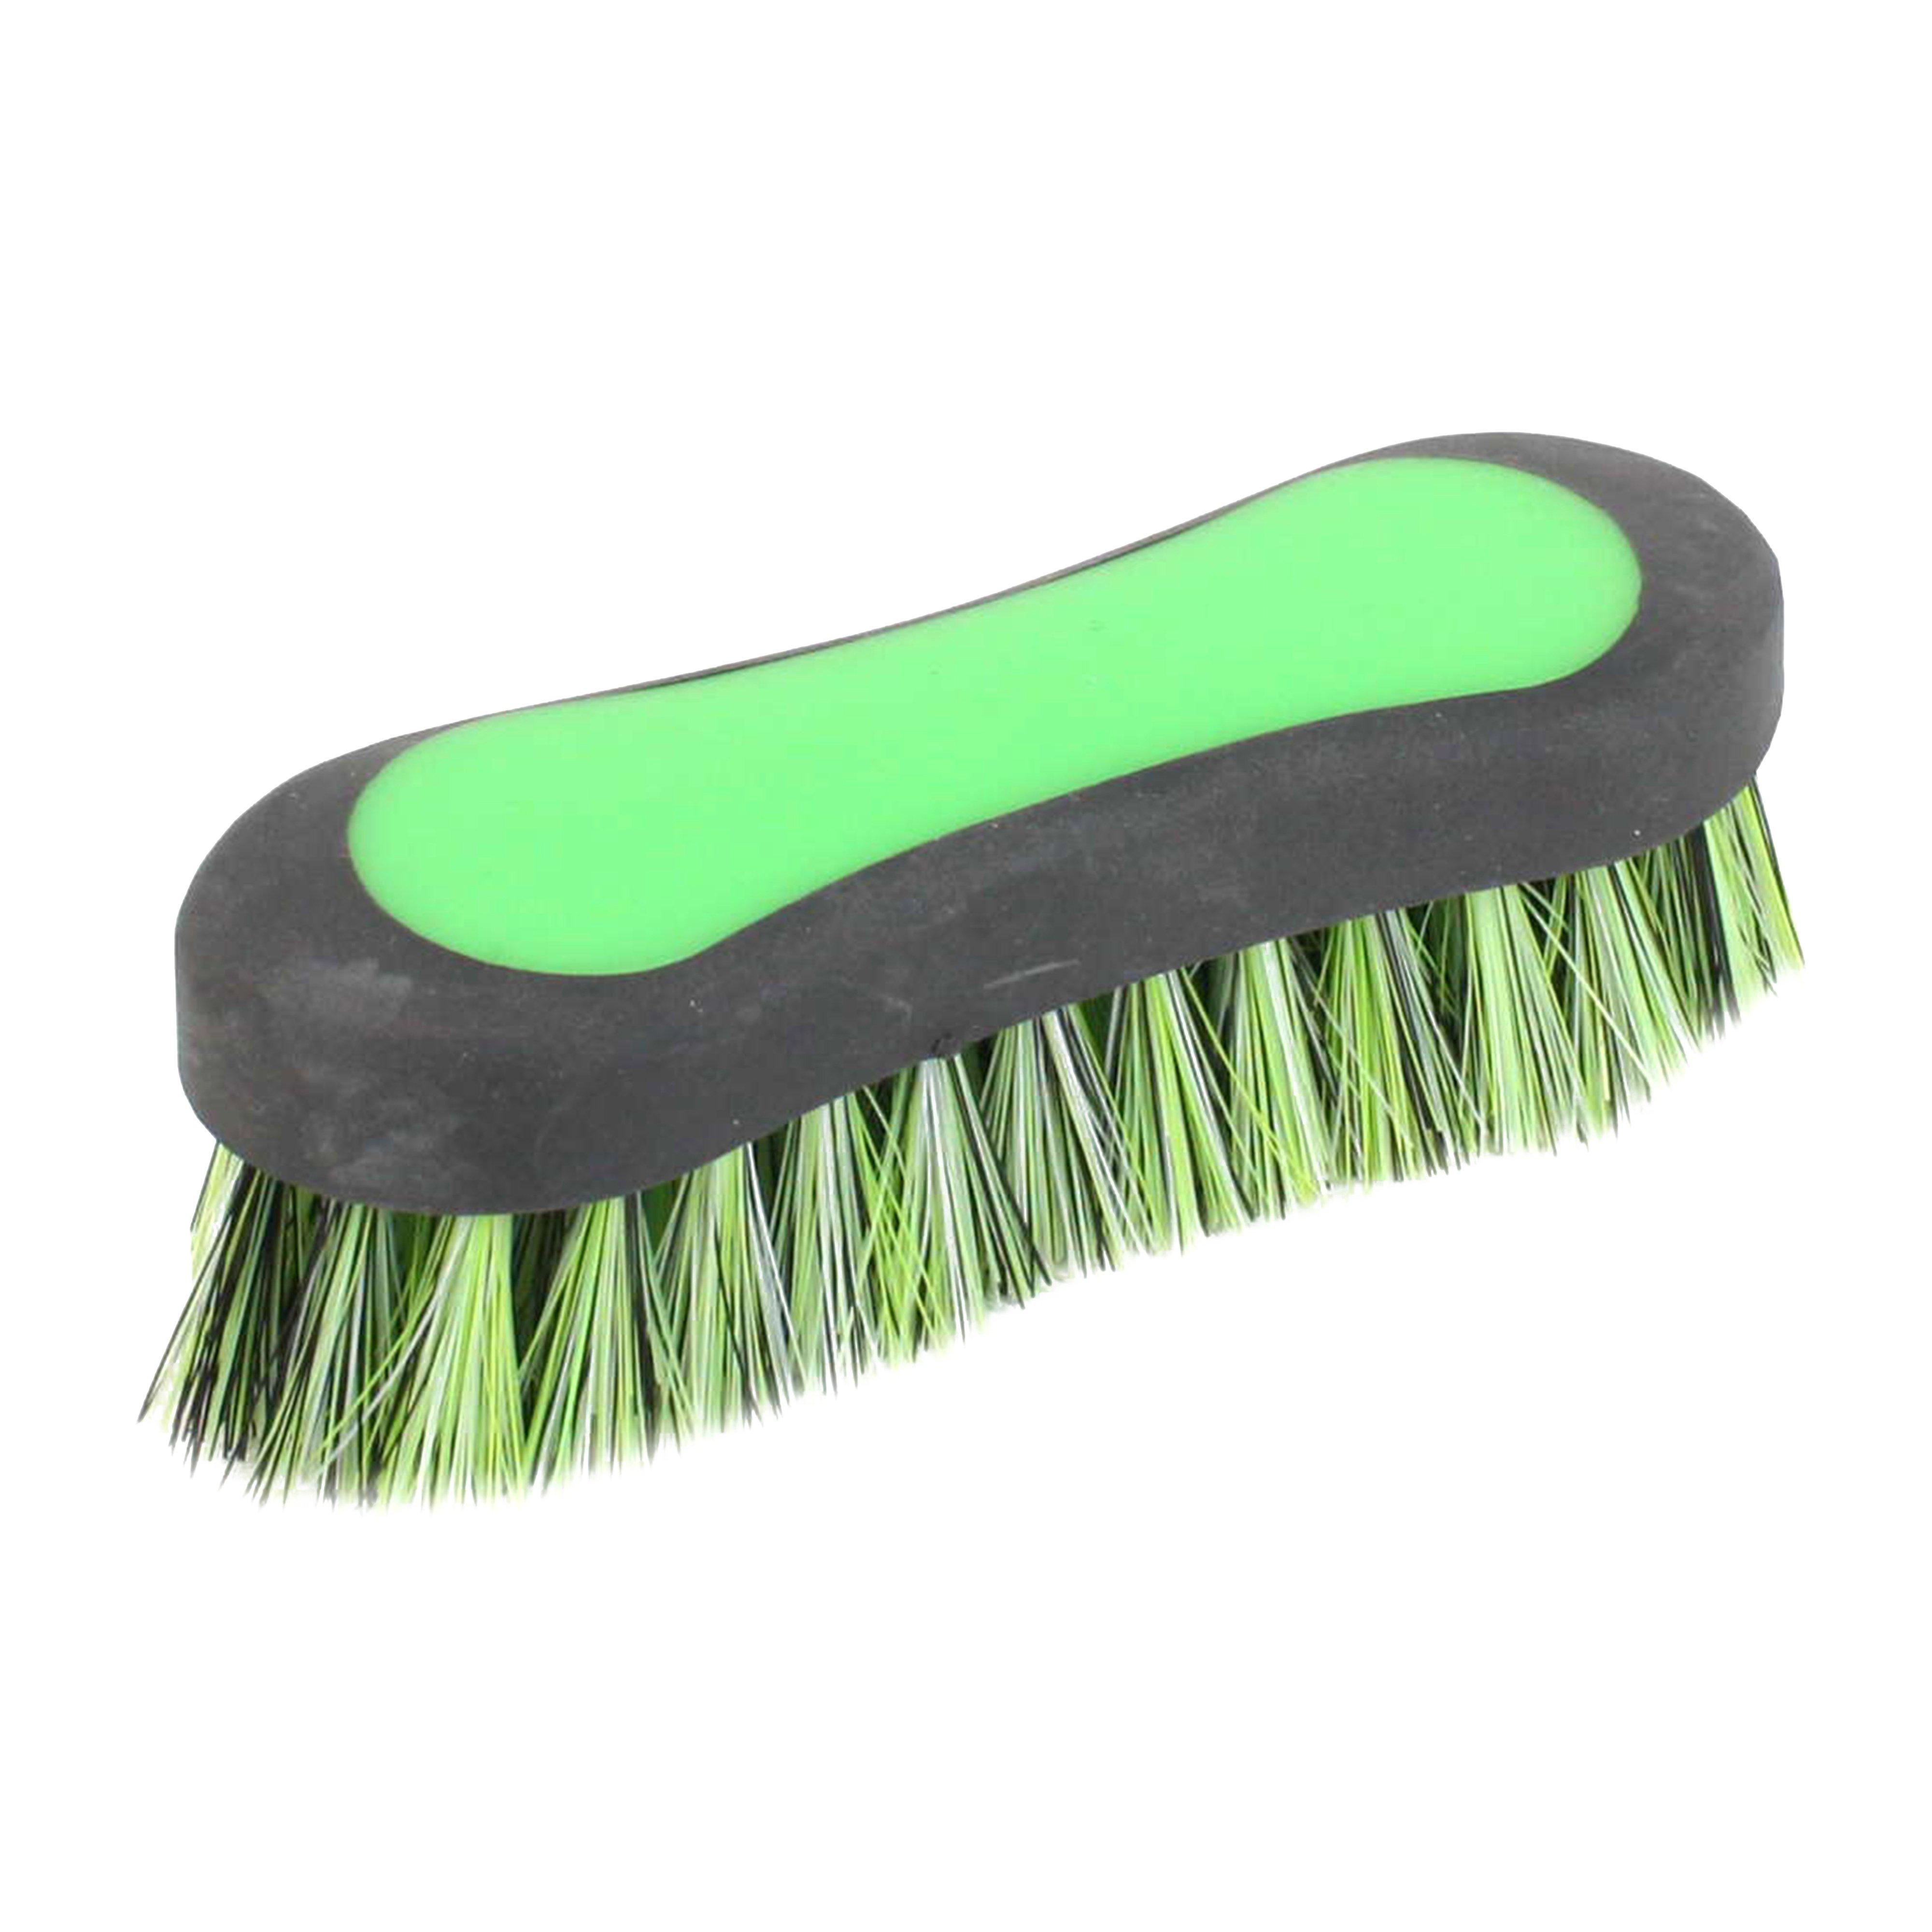 Ezi-Groom Face Brush Green